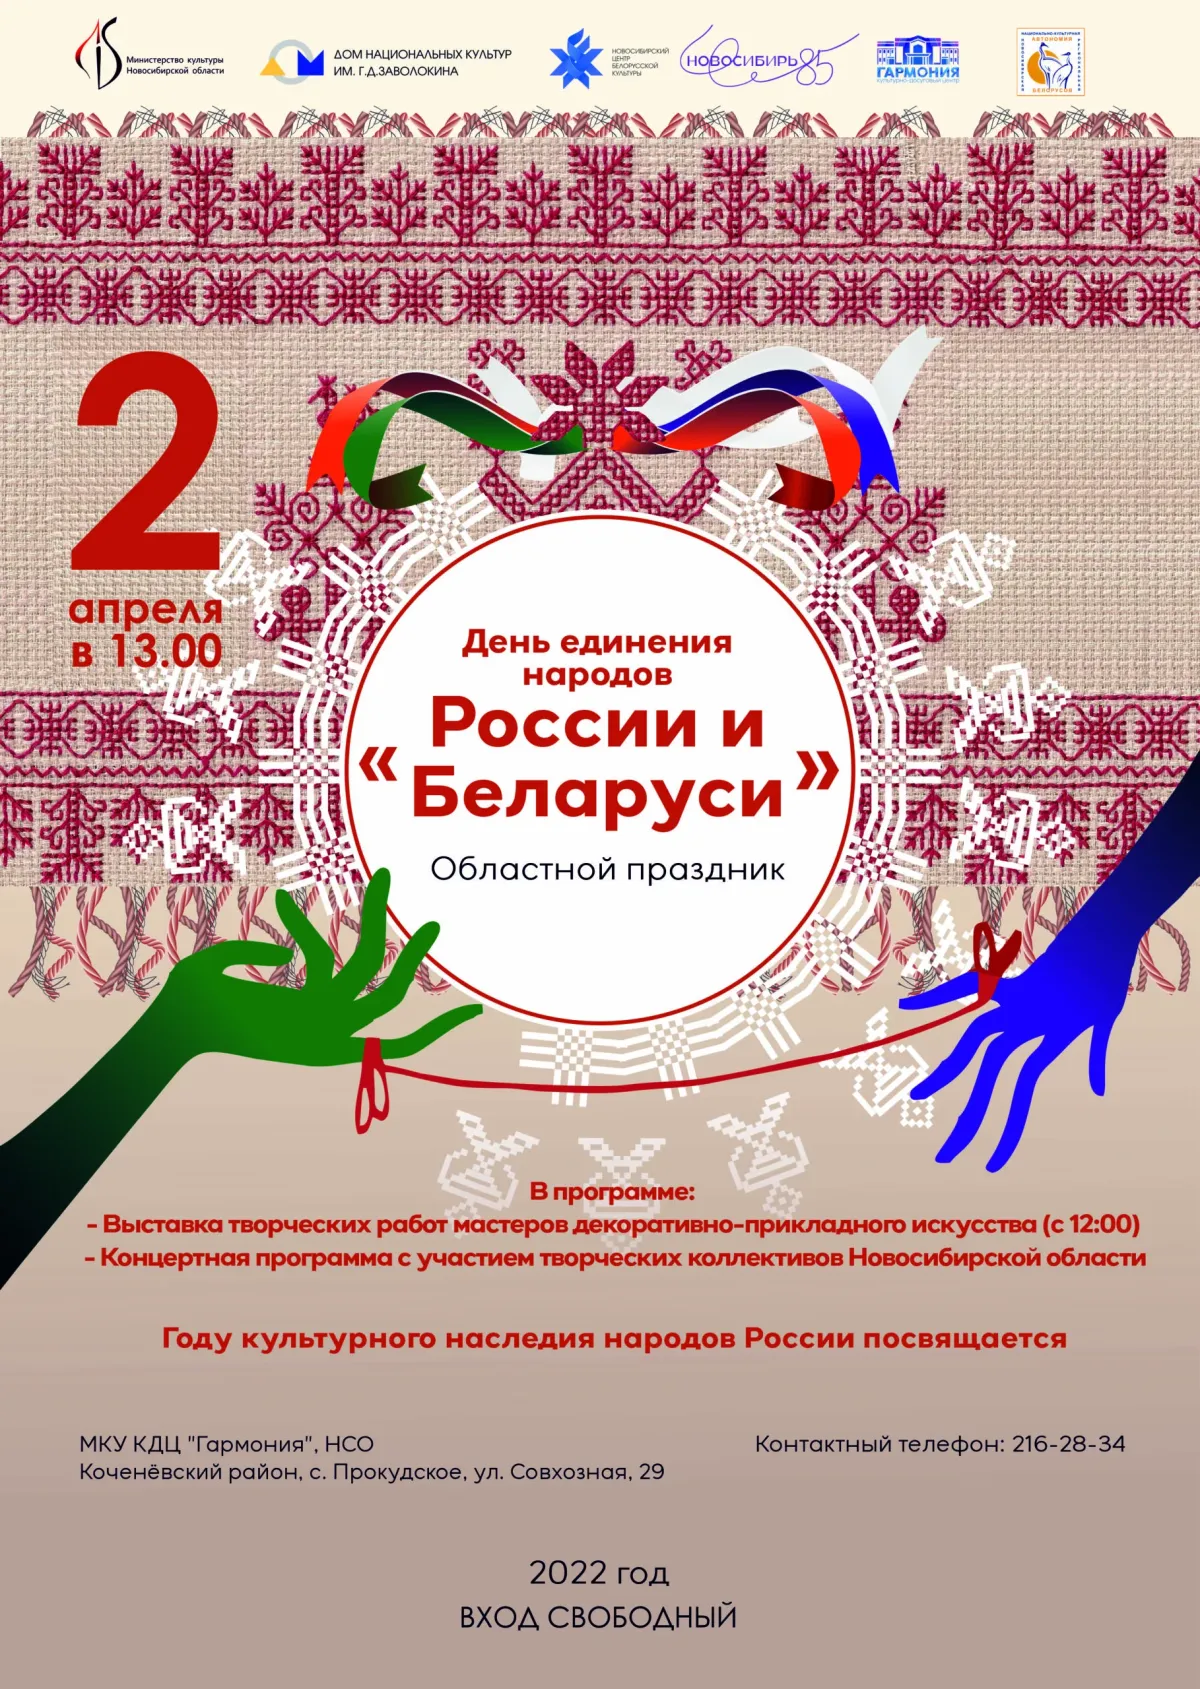 День единения россии и белоруссии мероприятия